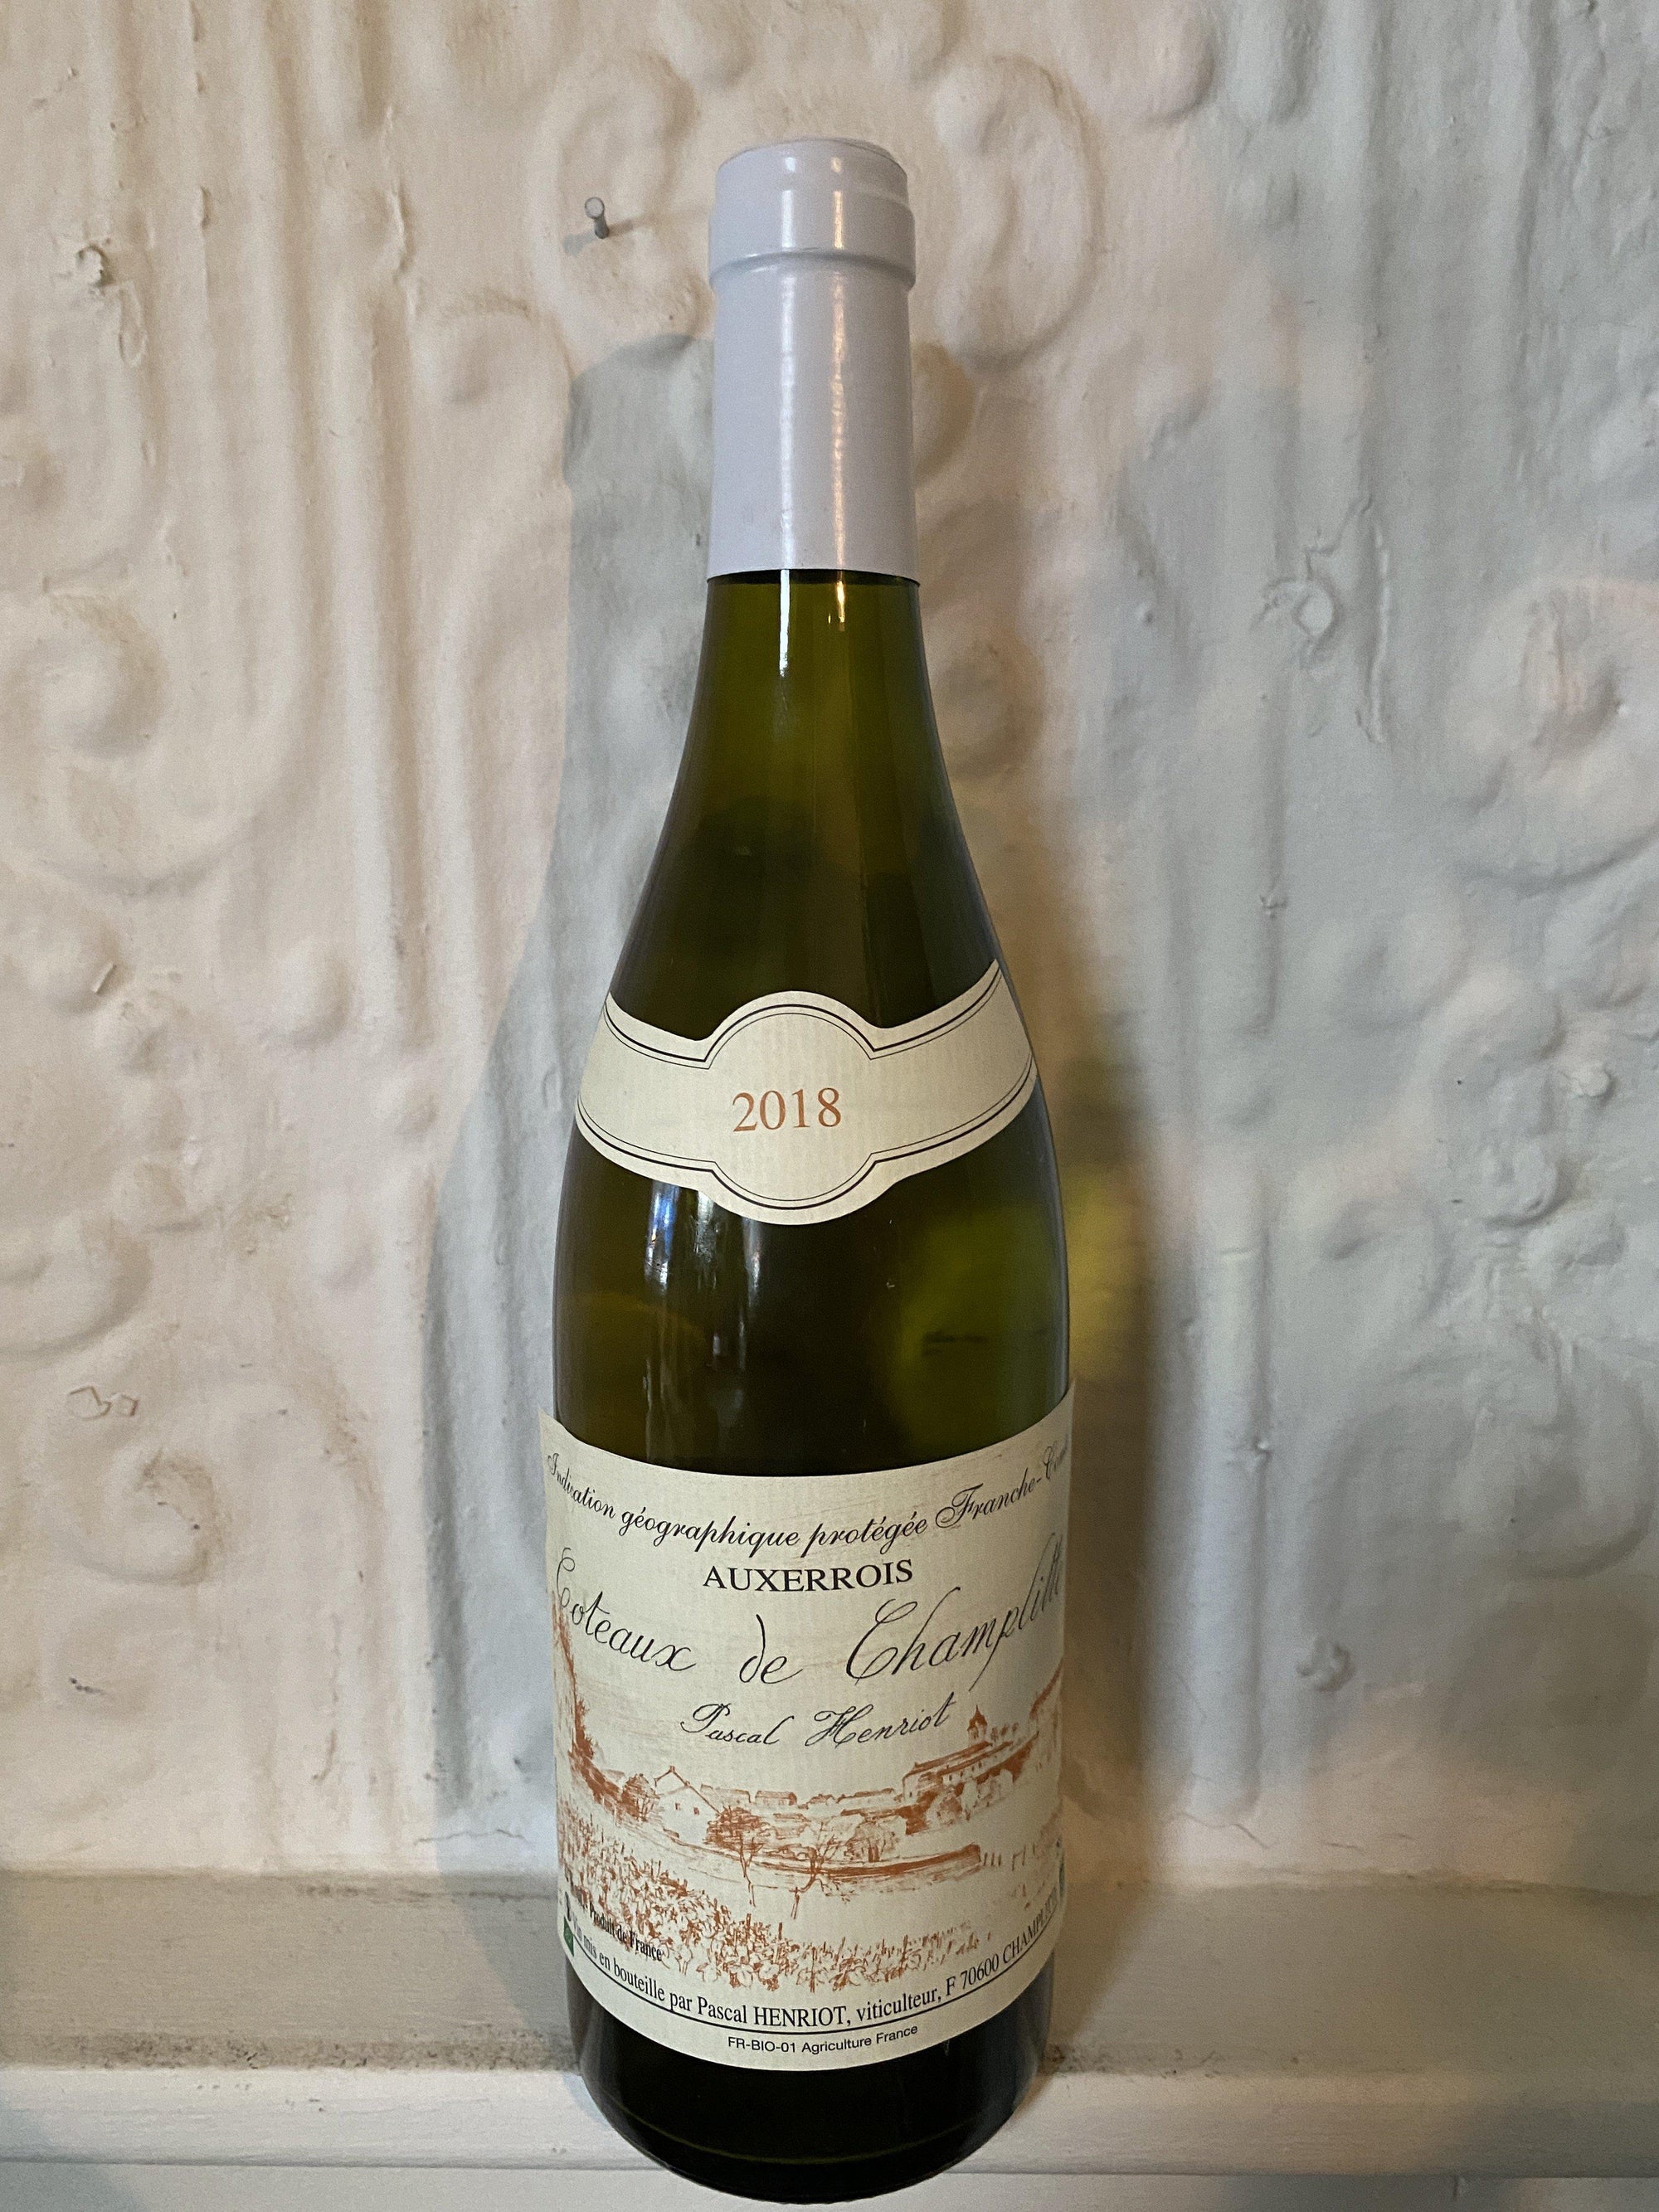 Auxerrois, Pascal Henriot 2018 (Franche-Comte, France)-Wine-Bibber & Bell